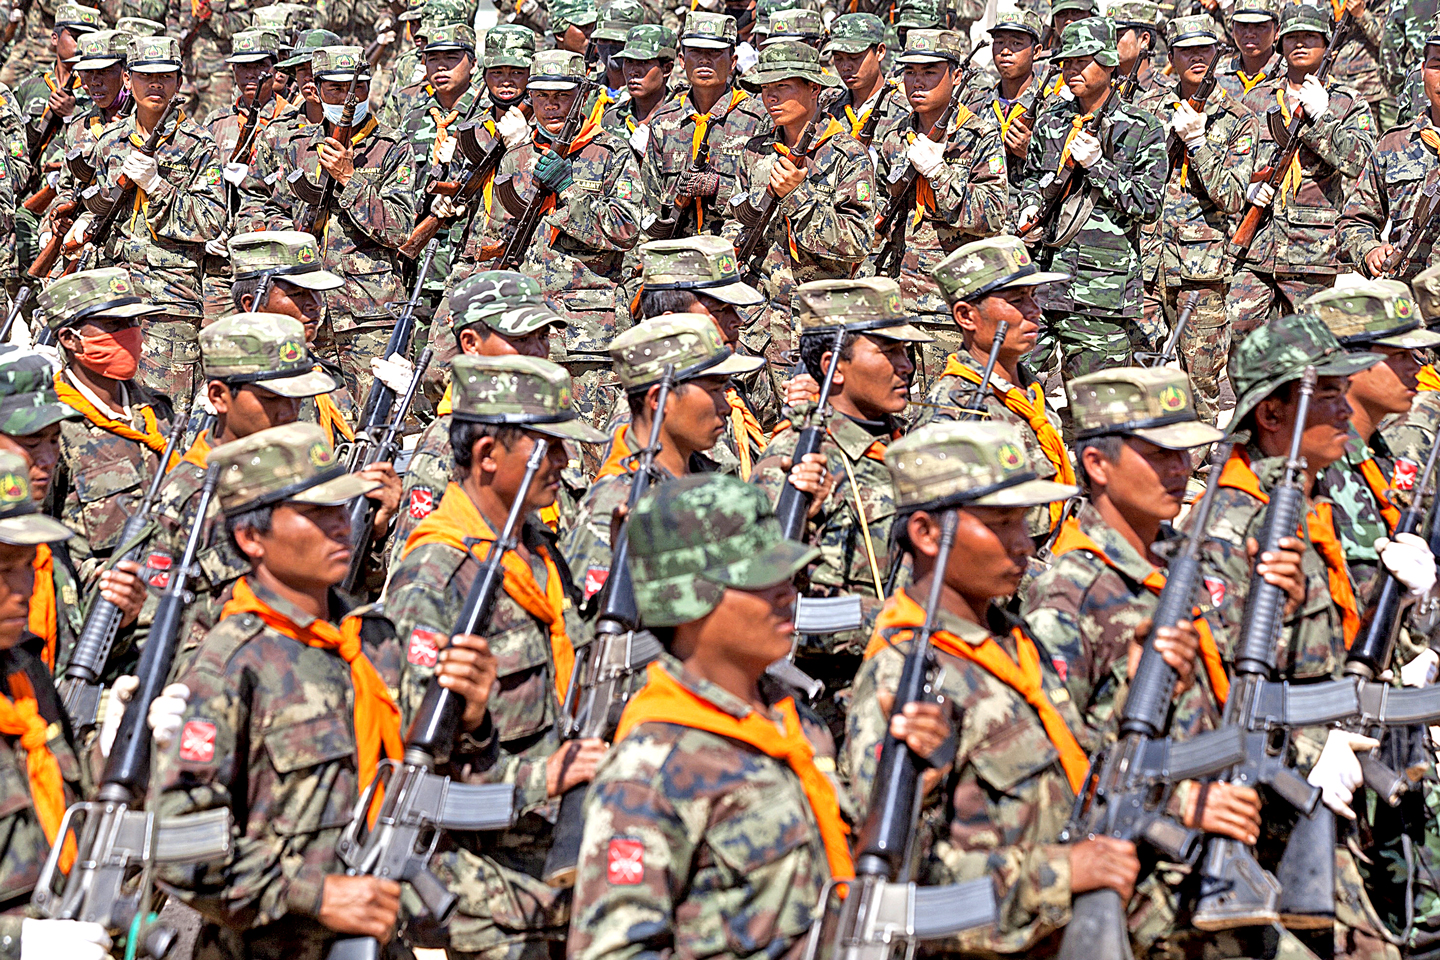 NCA ခြောက်နှစ်ပြည့်နှင့် မြန်မာ့ငြိမ်းချမ်းရေး ဖြစ်တန်ခြေများအား ဖြန့်ထွက်စဉ်းစားခြင်း